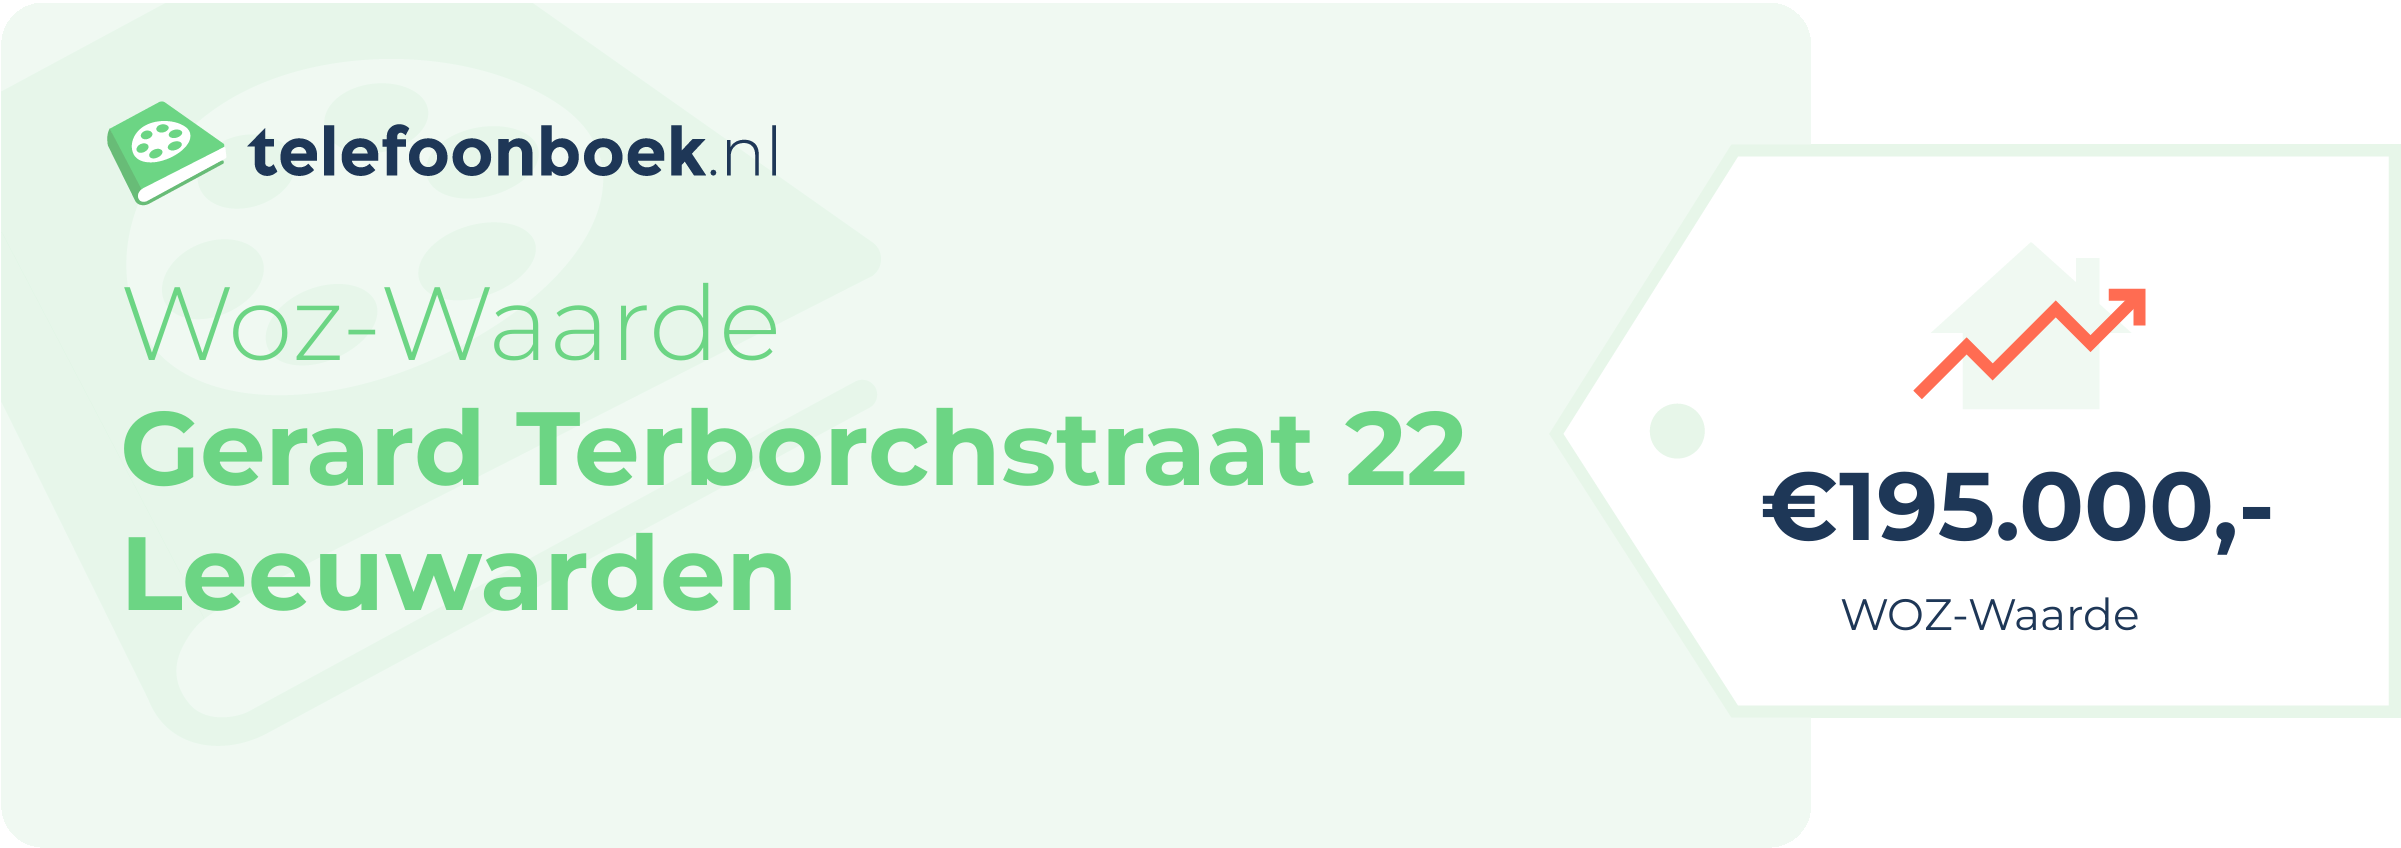 WOZ-waarde Gerard Terborchstraat 22 Leeuwarden